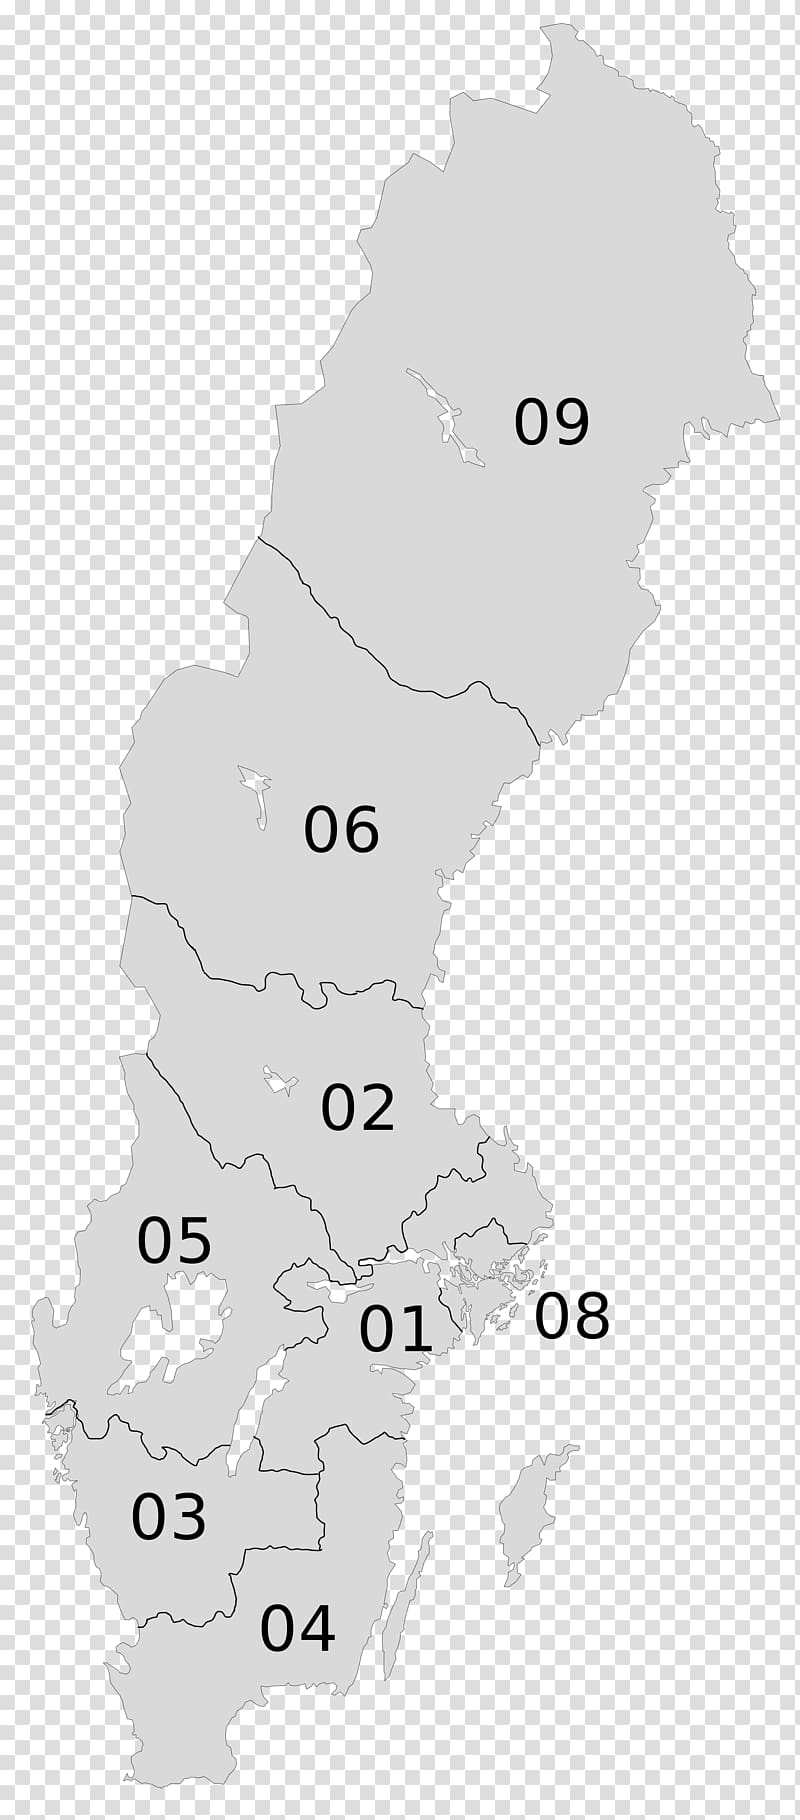 NUTS statistical regions of Sweden Lands of Sweden Swedish Nomenclature of Territorial Units for Statistics East Sweden, sweden transparent background PNG clipart